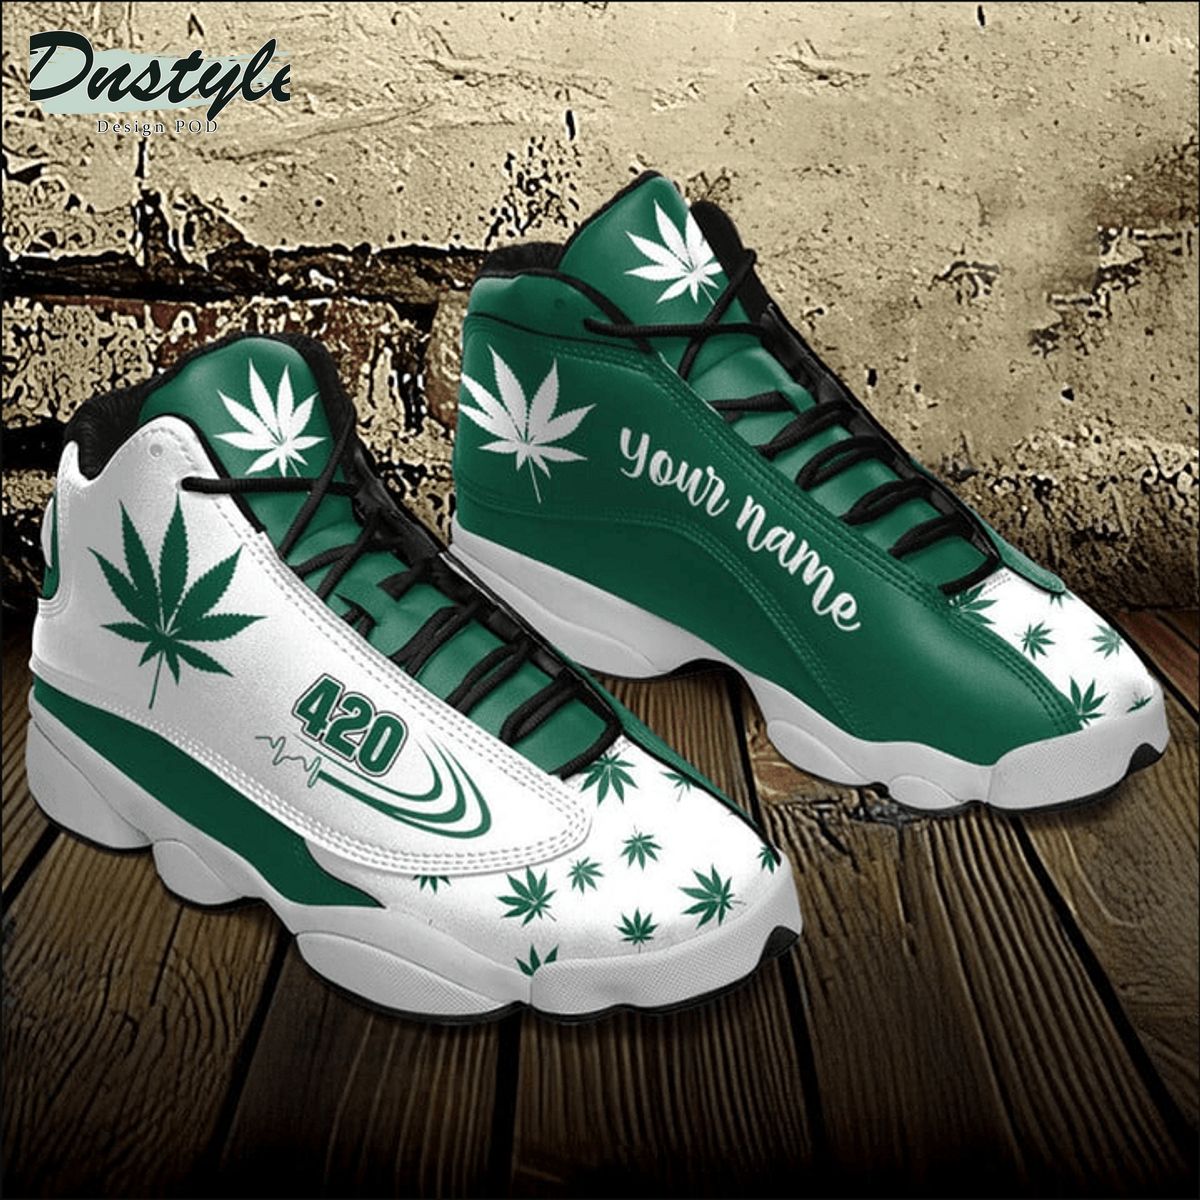 Weed green 420 custom name air jordan 13 shoes